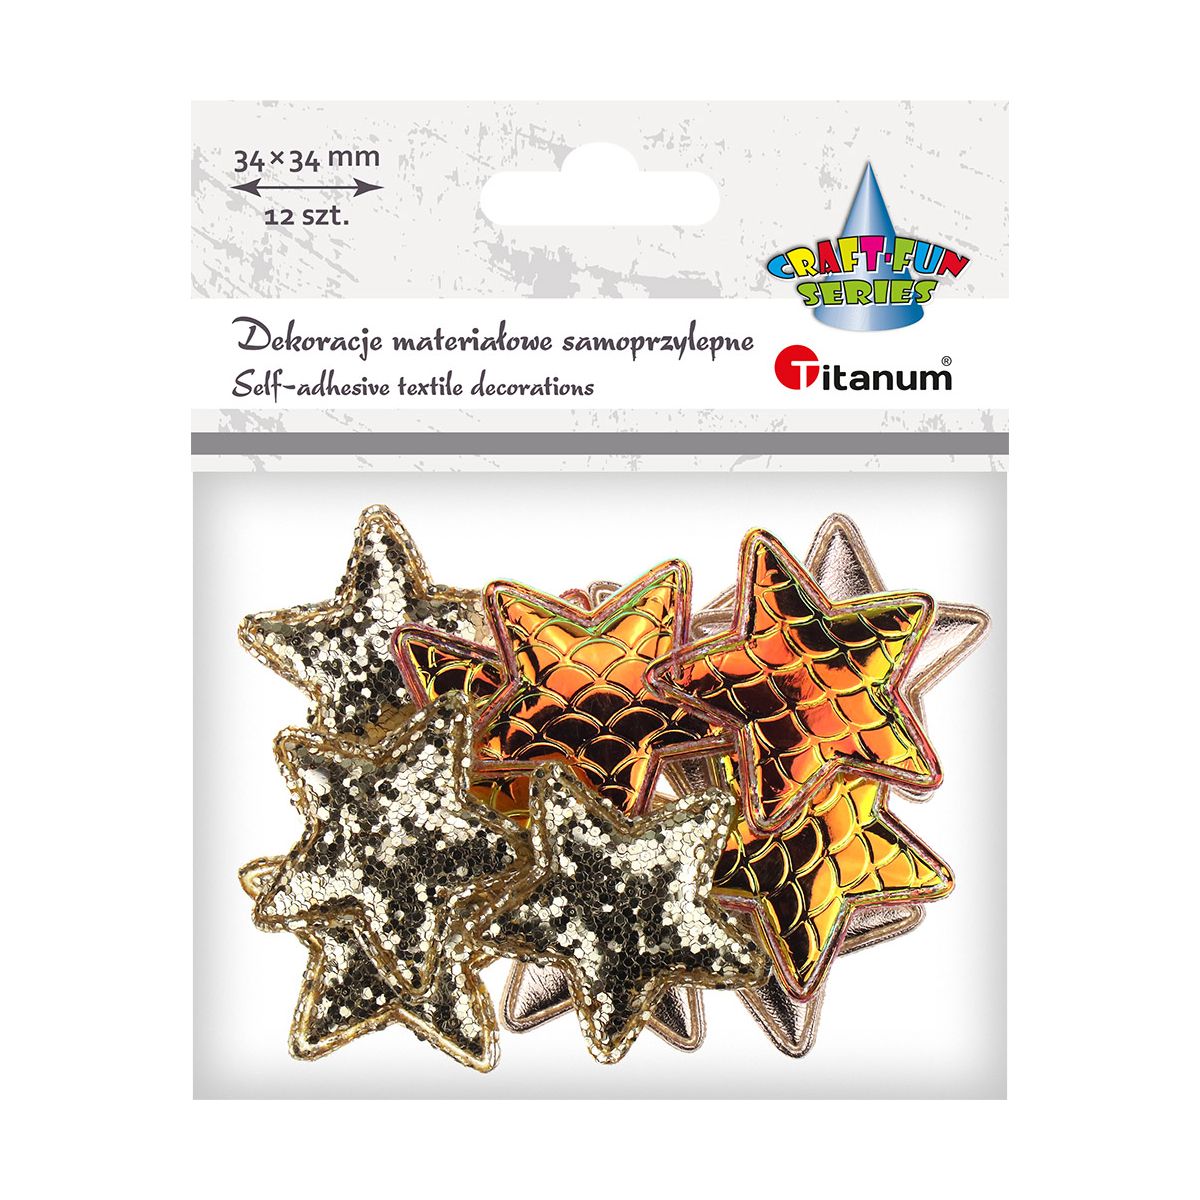 Ozdoba materiałowa Titanum Craft-Fun Series gwiazdki samoprzylepne (2324050-gold)